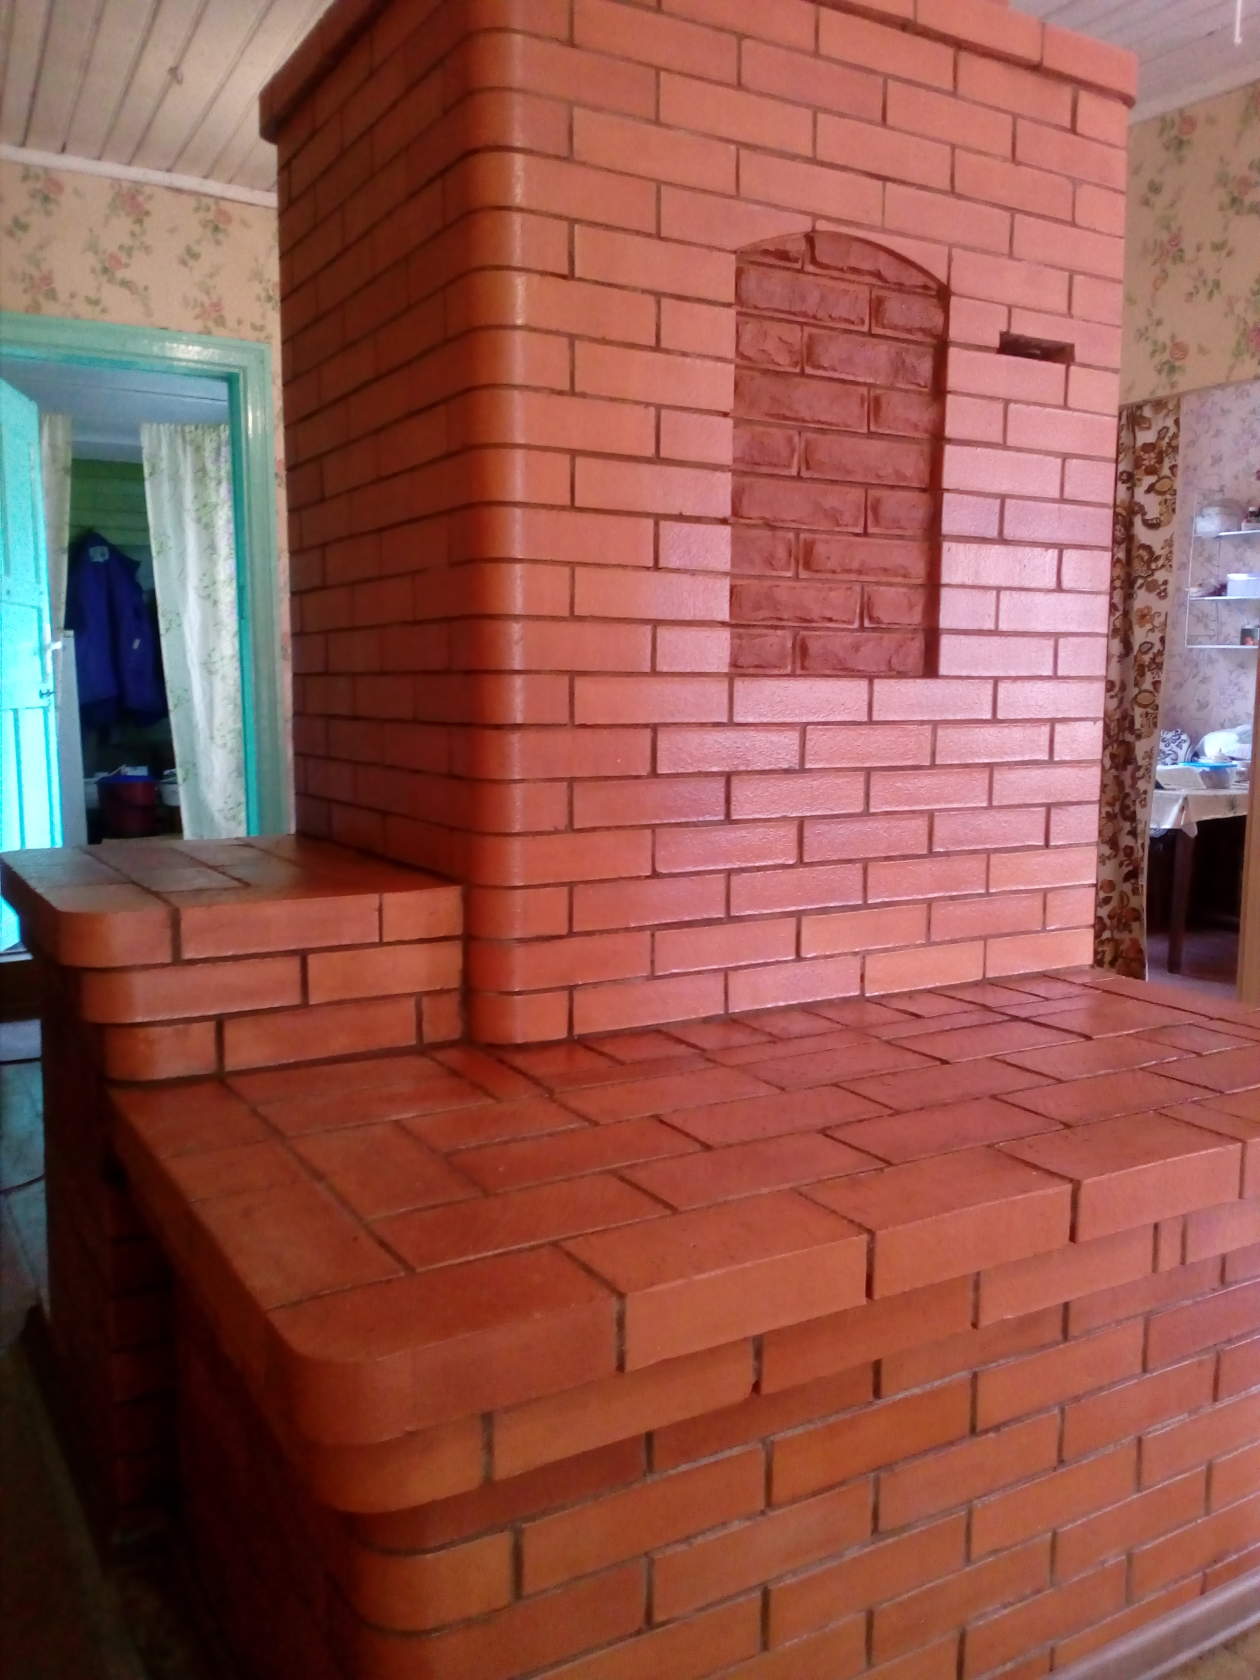 Русская печь с камином и лежанкой — сложная конструкция для большого дома